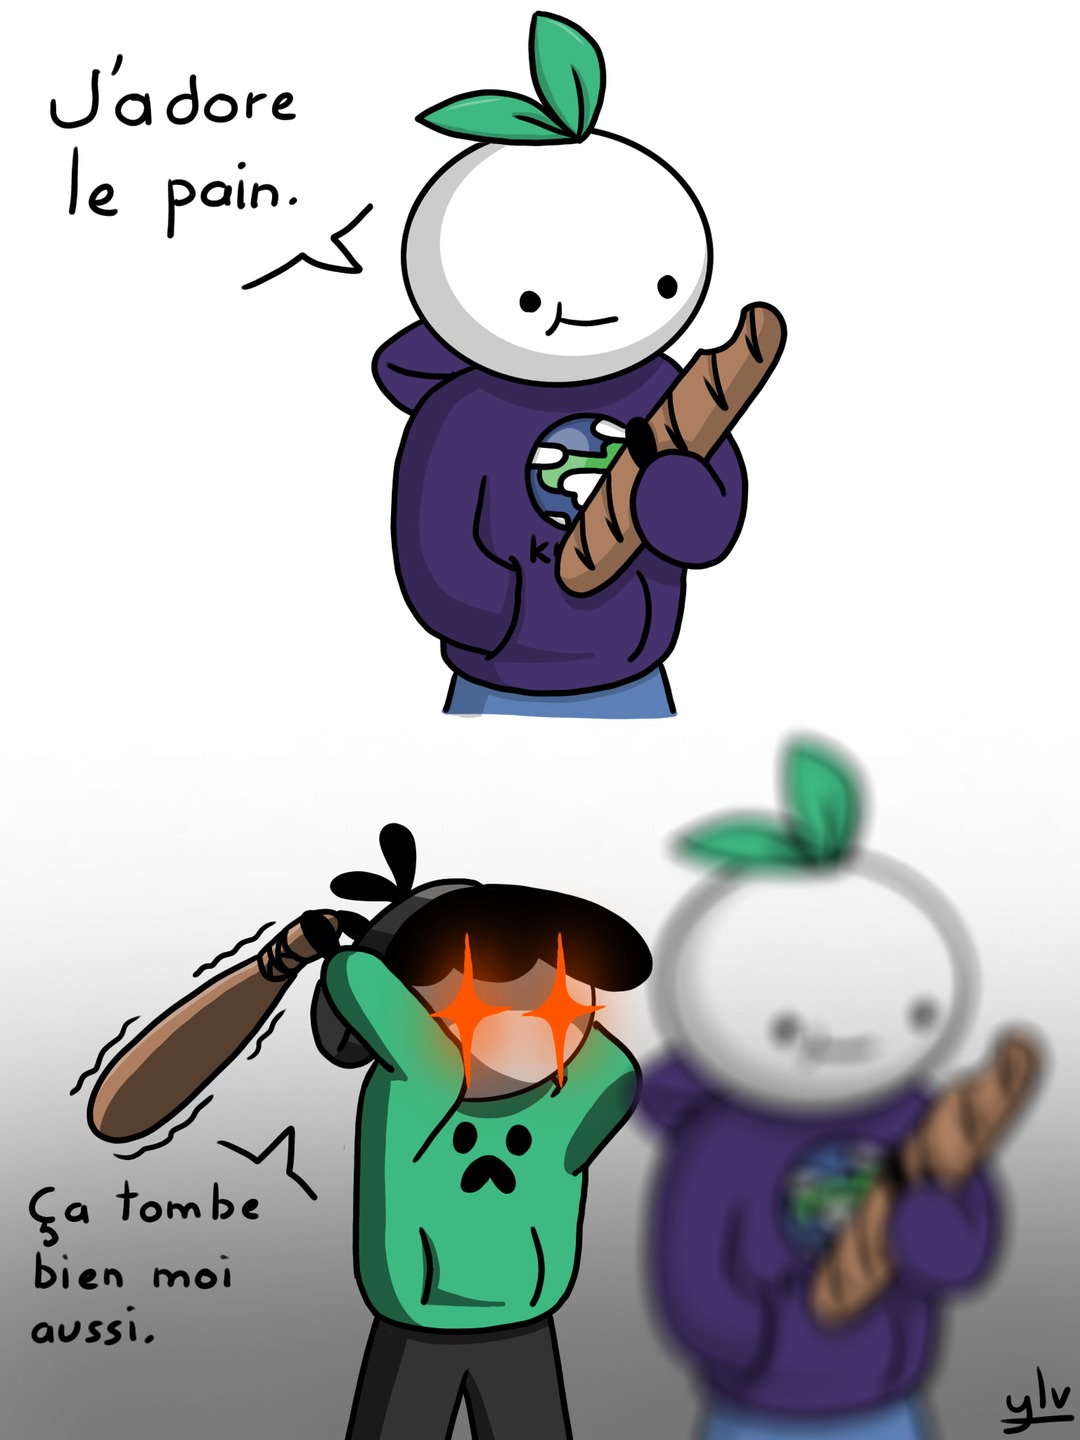 "Pain" veut dire douleur en anglais - meme